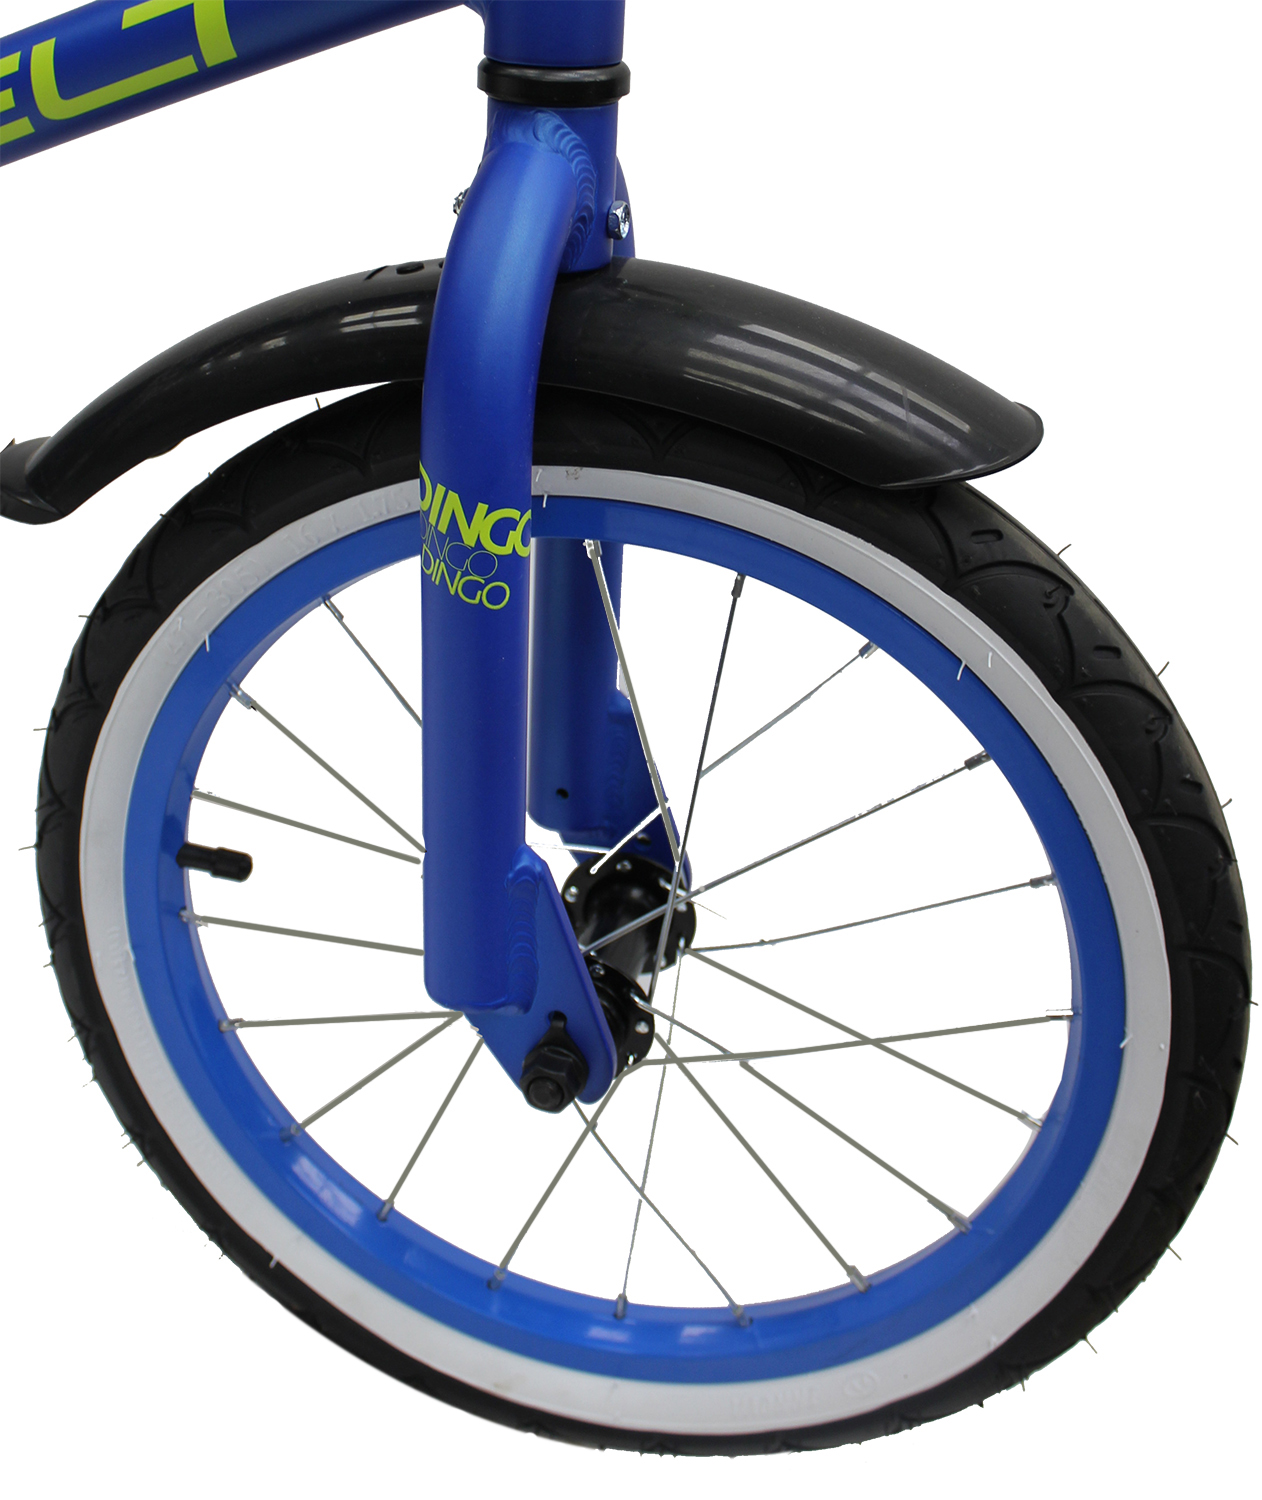 Велосипед Welt Dingo 16 2021 Blue/acid green